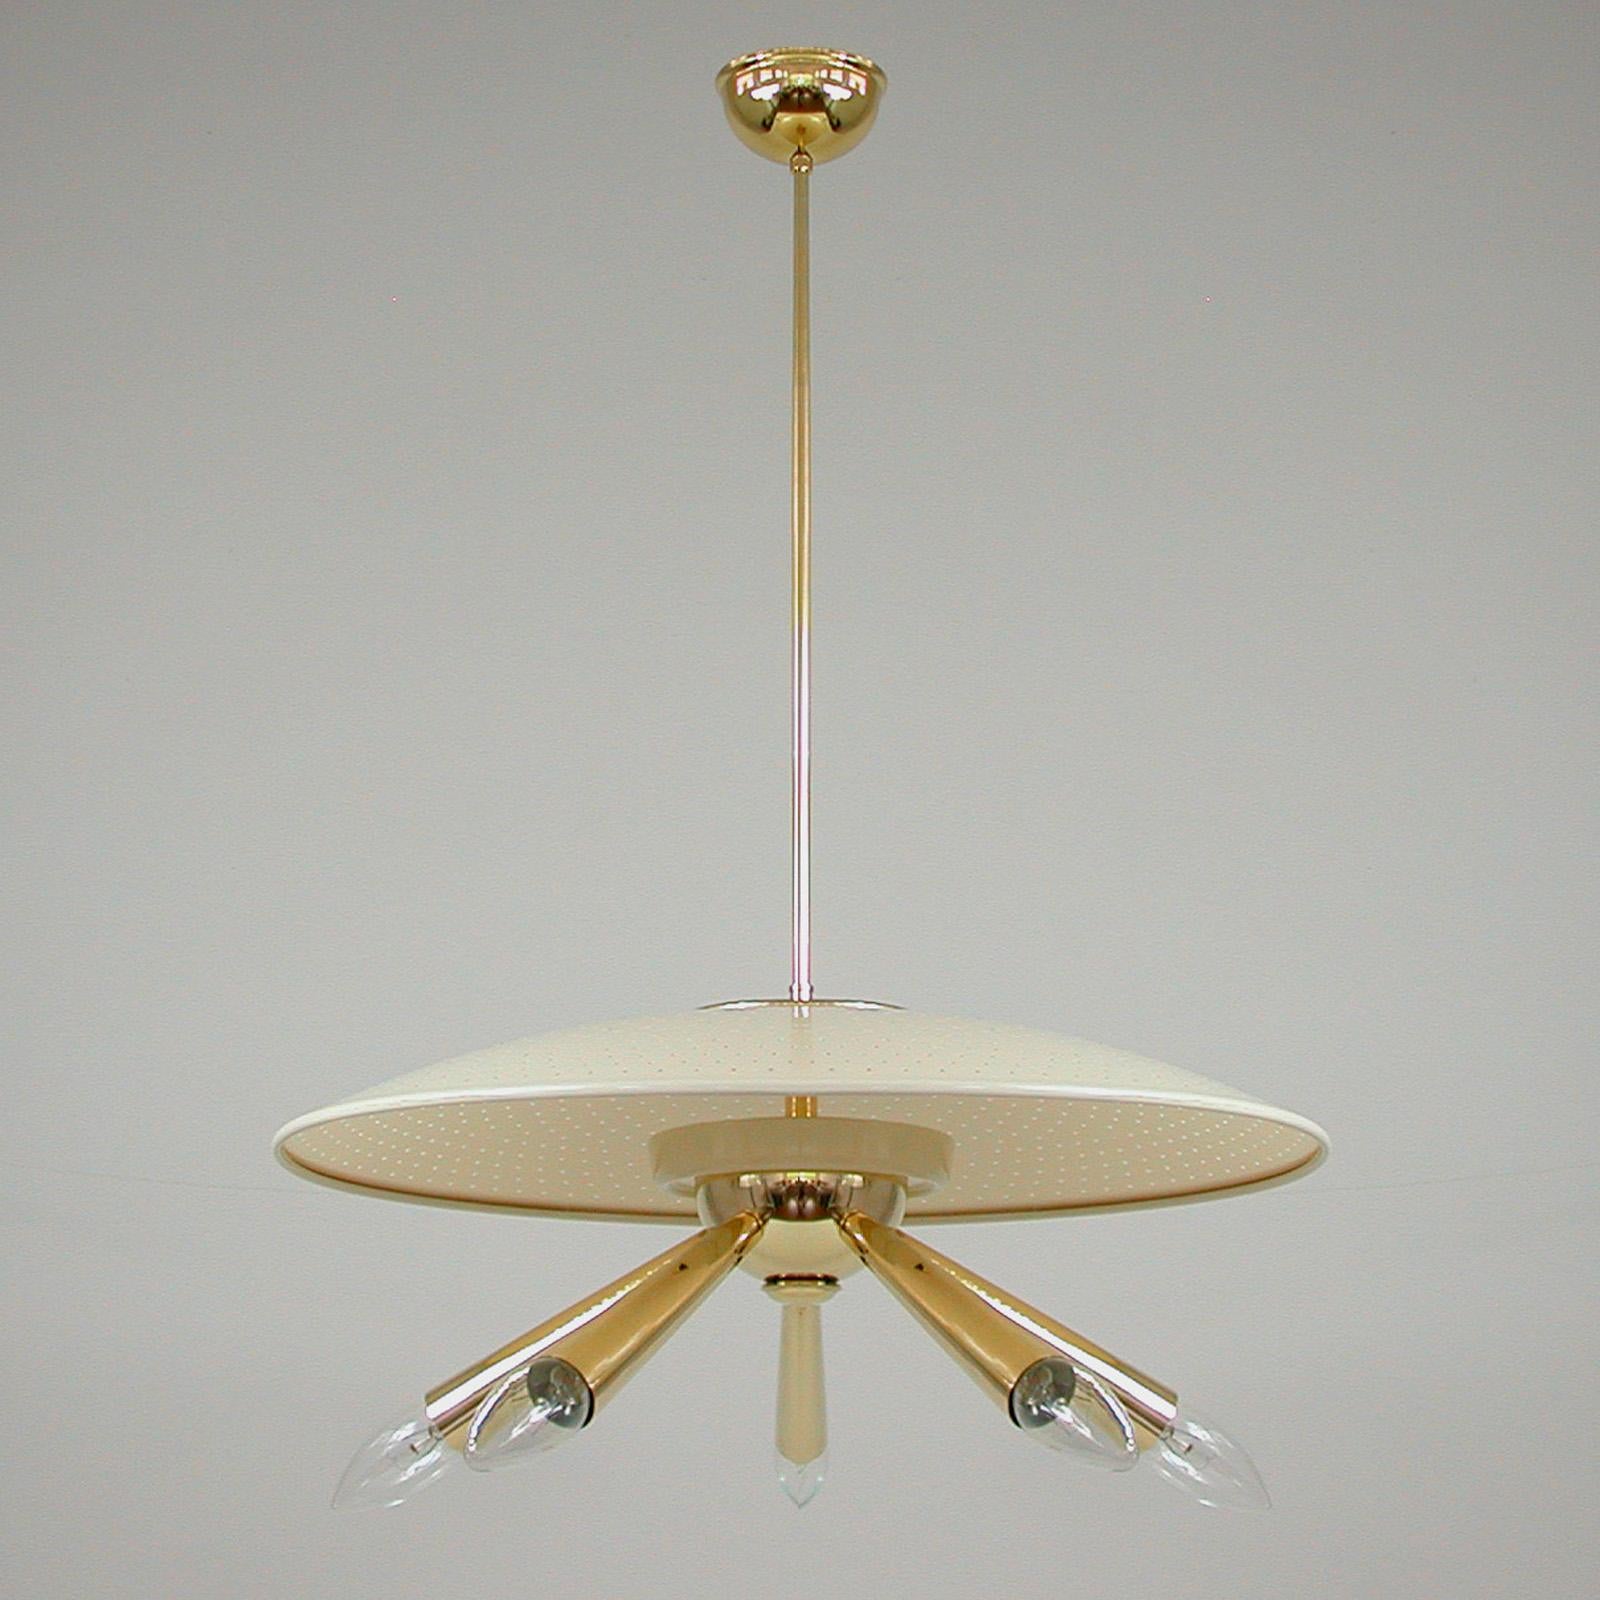 Dieser ungewöhnliche Kronleuchter wurde in den 1950er Jahren in Italien entworfen und hergestellt. Sie verfügt über einen Messingkörper mit 5 Messing-Lampenarmen und einen cremefarbenen perforierten Kunststoff-Kuppel-Lampenschirm. Verkabelt für den